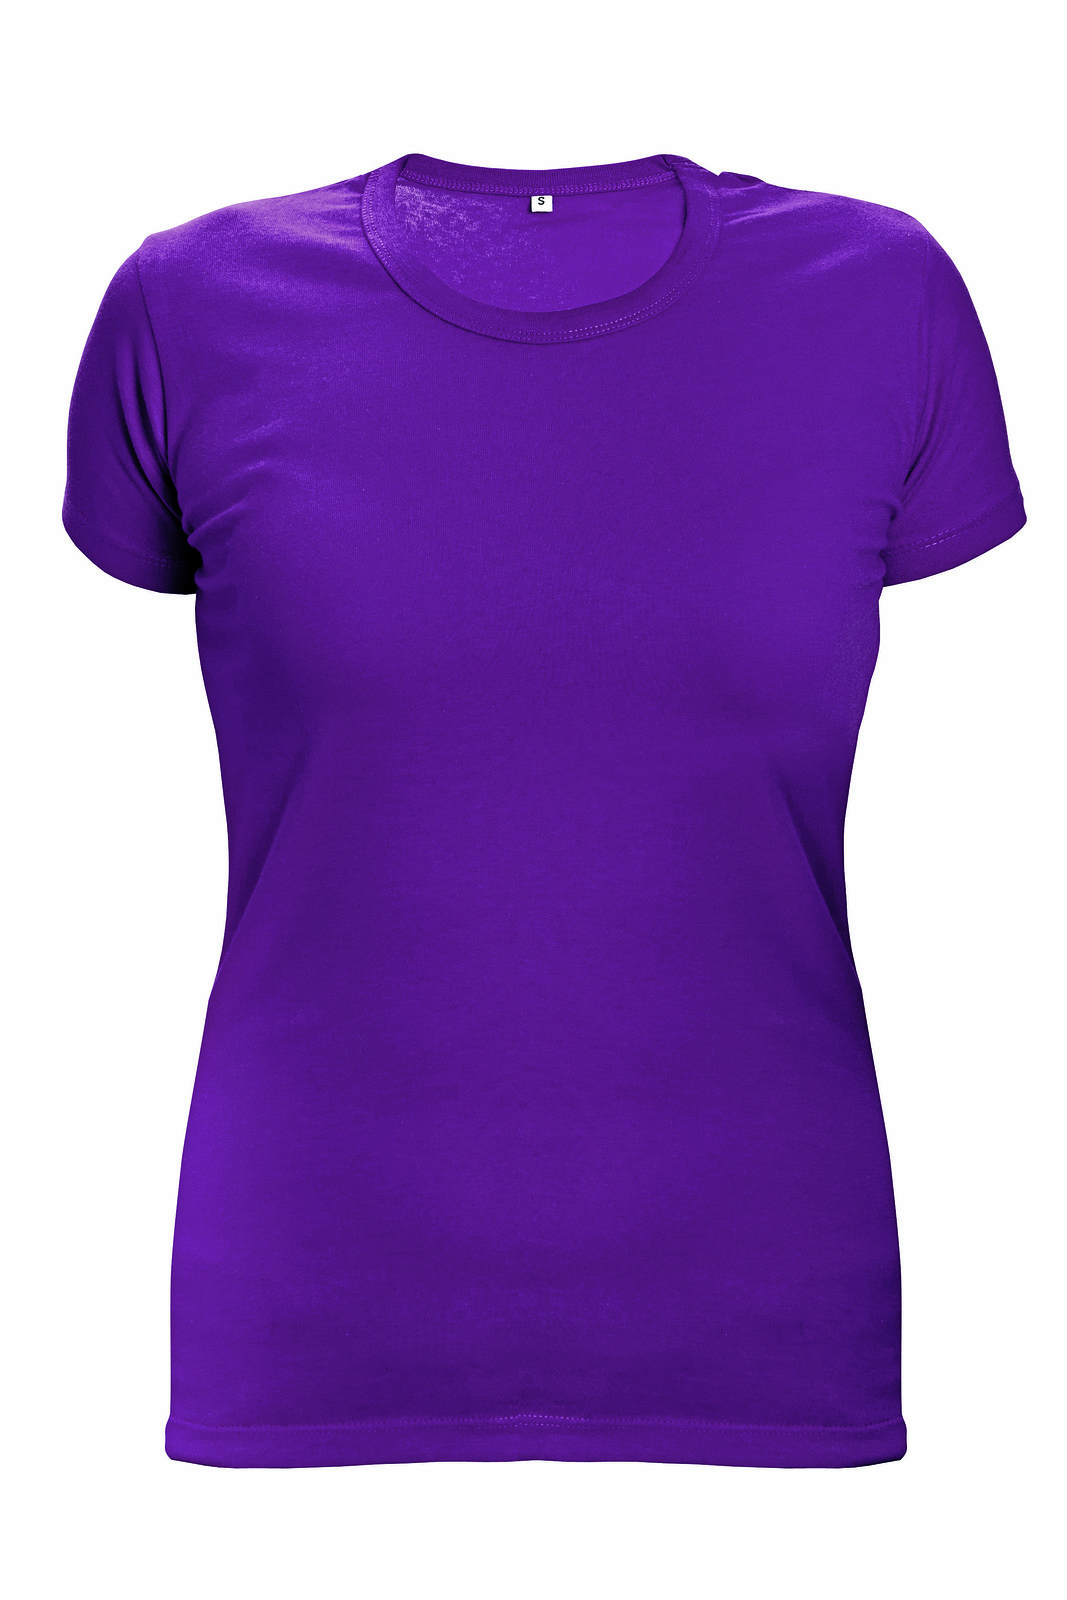 Dámske tričko s krátkym rukávom Surma Lady - veľkosť: M, farba: tmavo ružová